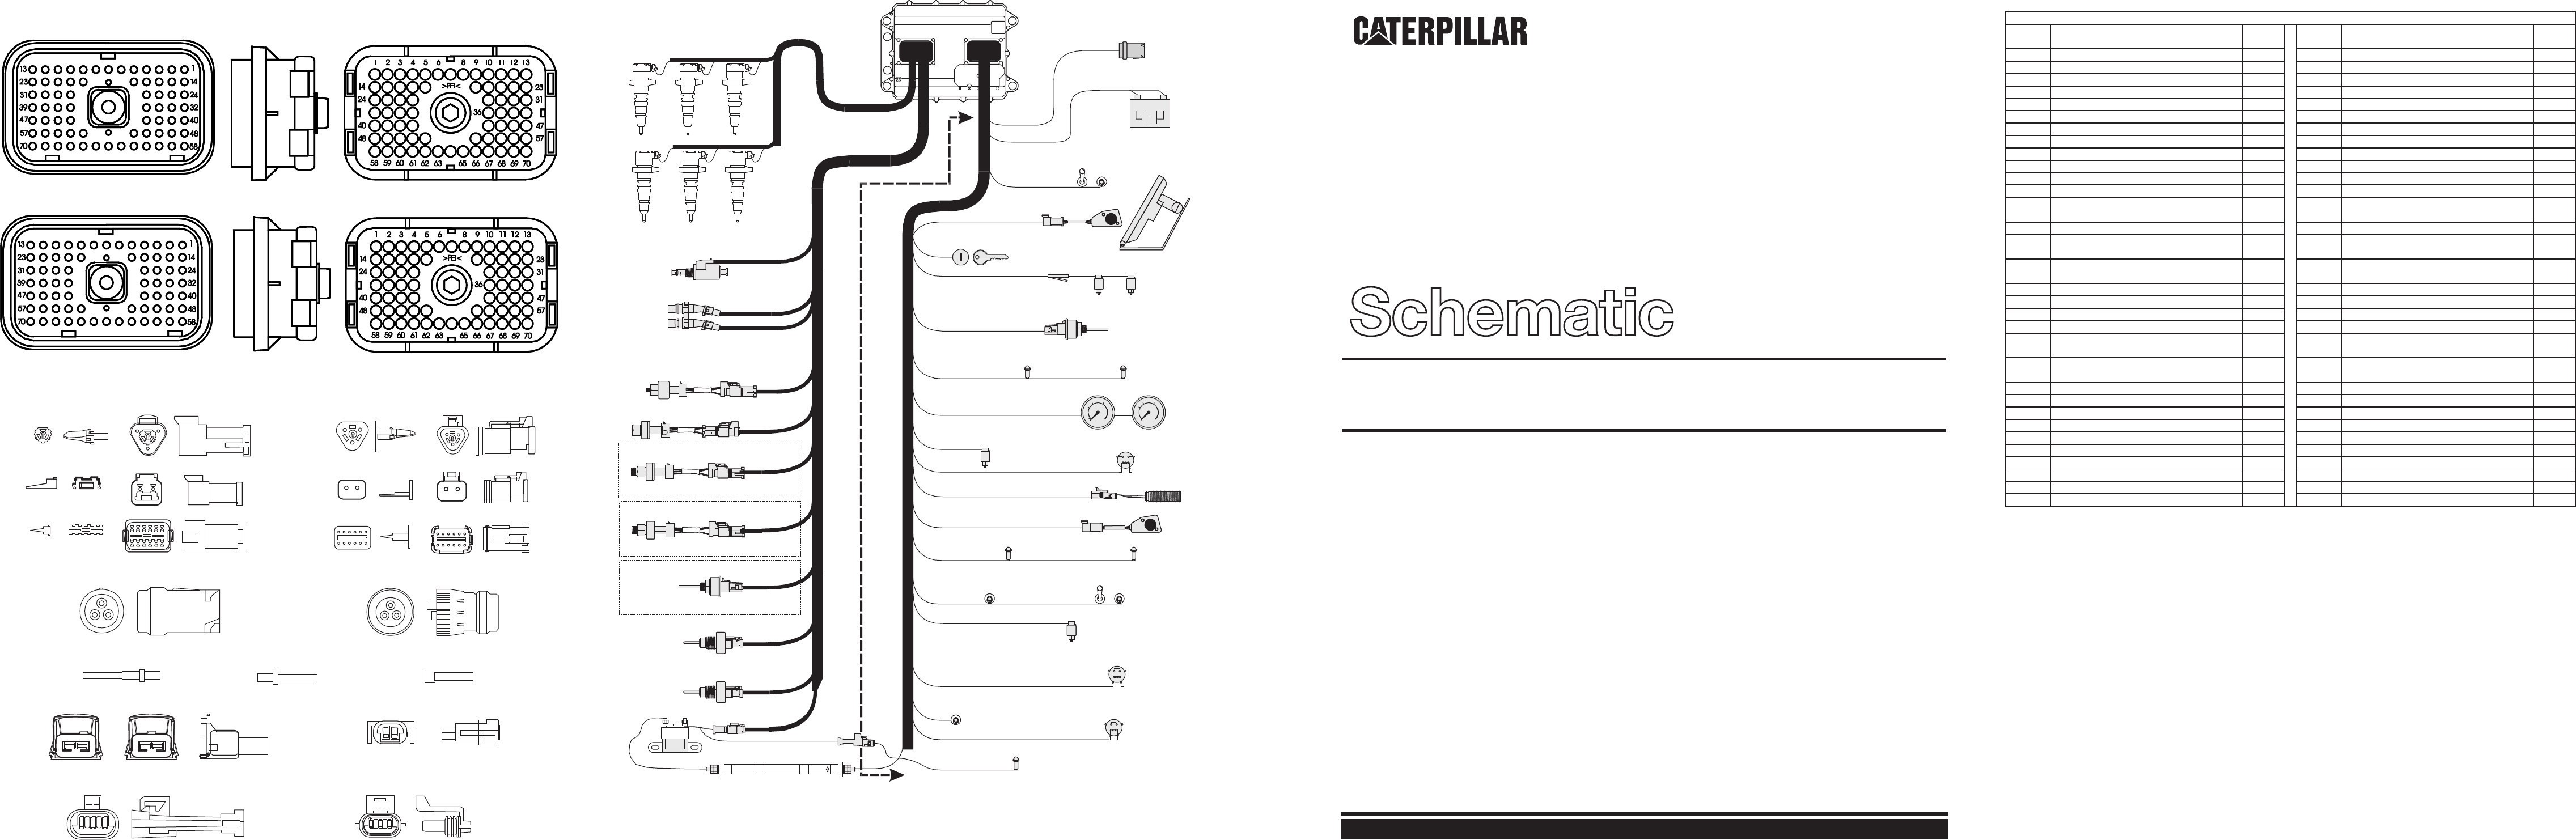 Caterpillar C12 Engine Diagram Cat 3126 Alternator Wiring Diagram Schematics Wiring Diagrams • Of Caterpillar C12 Engine Diagram